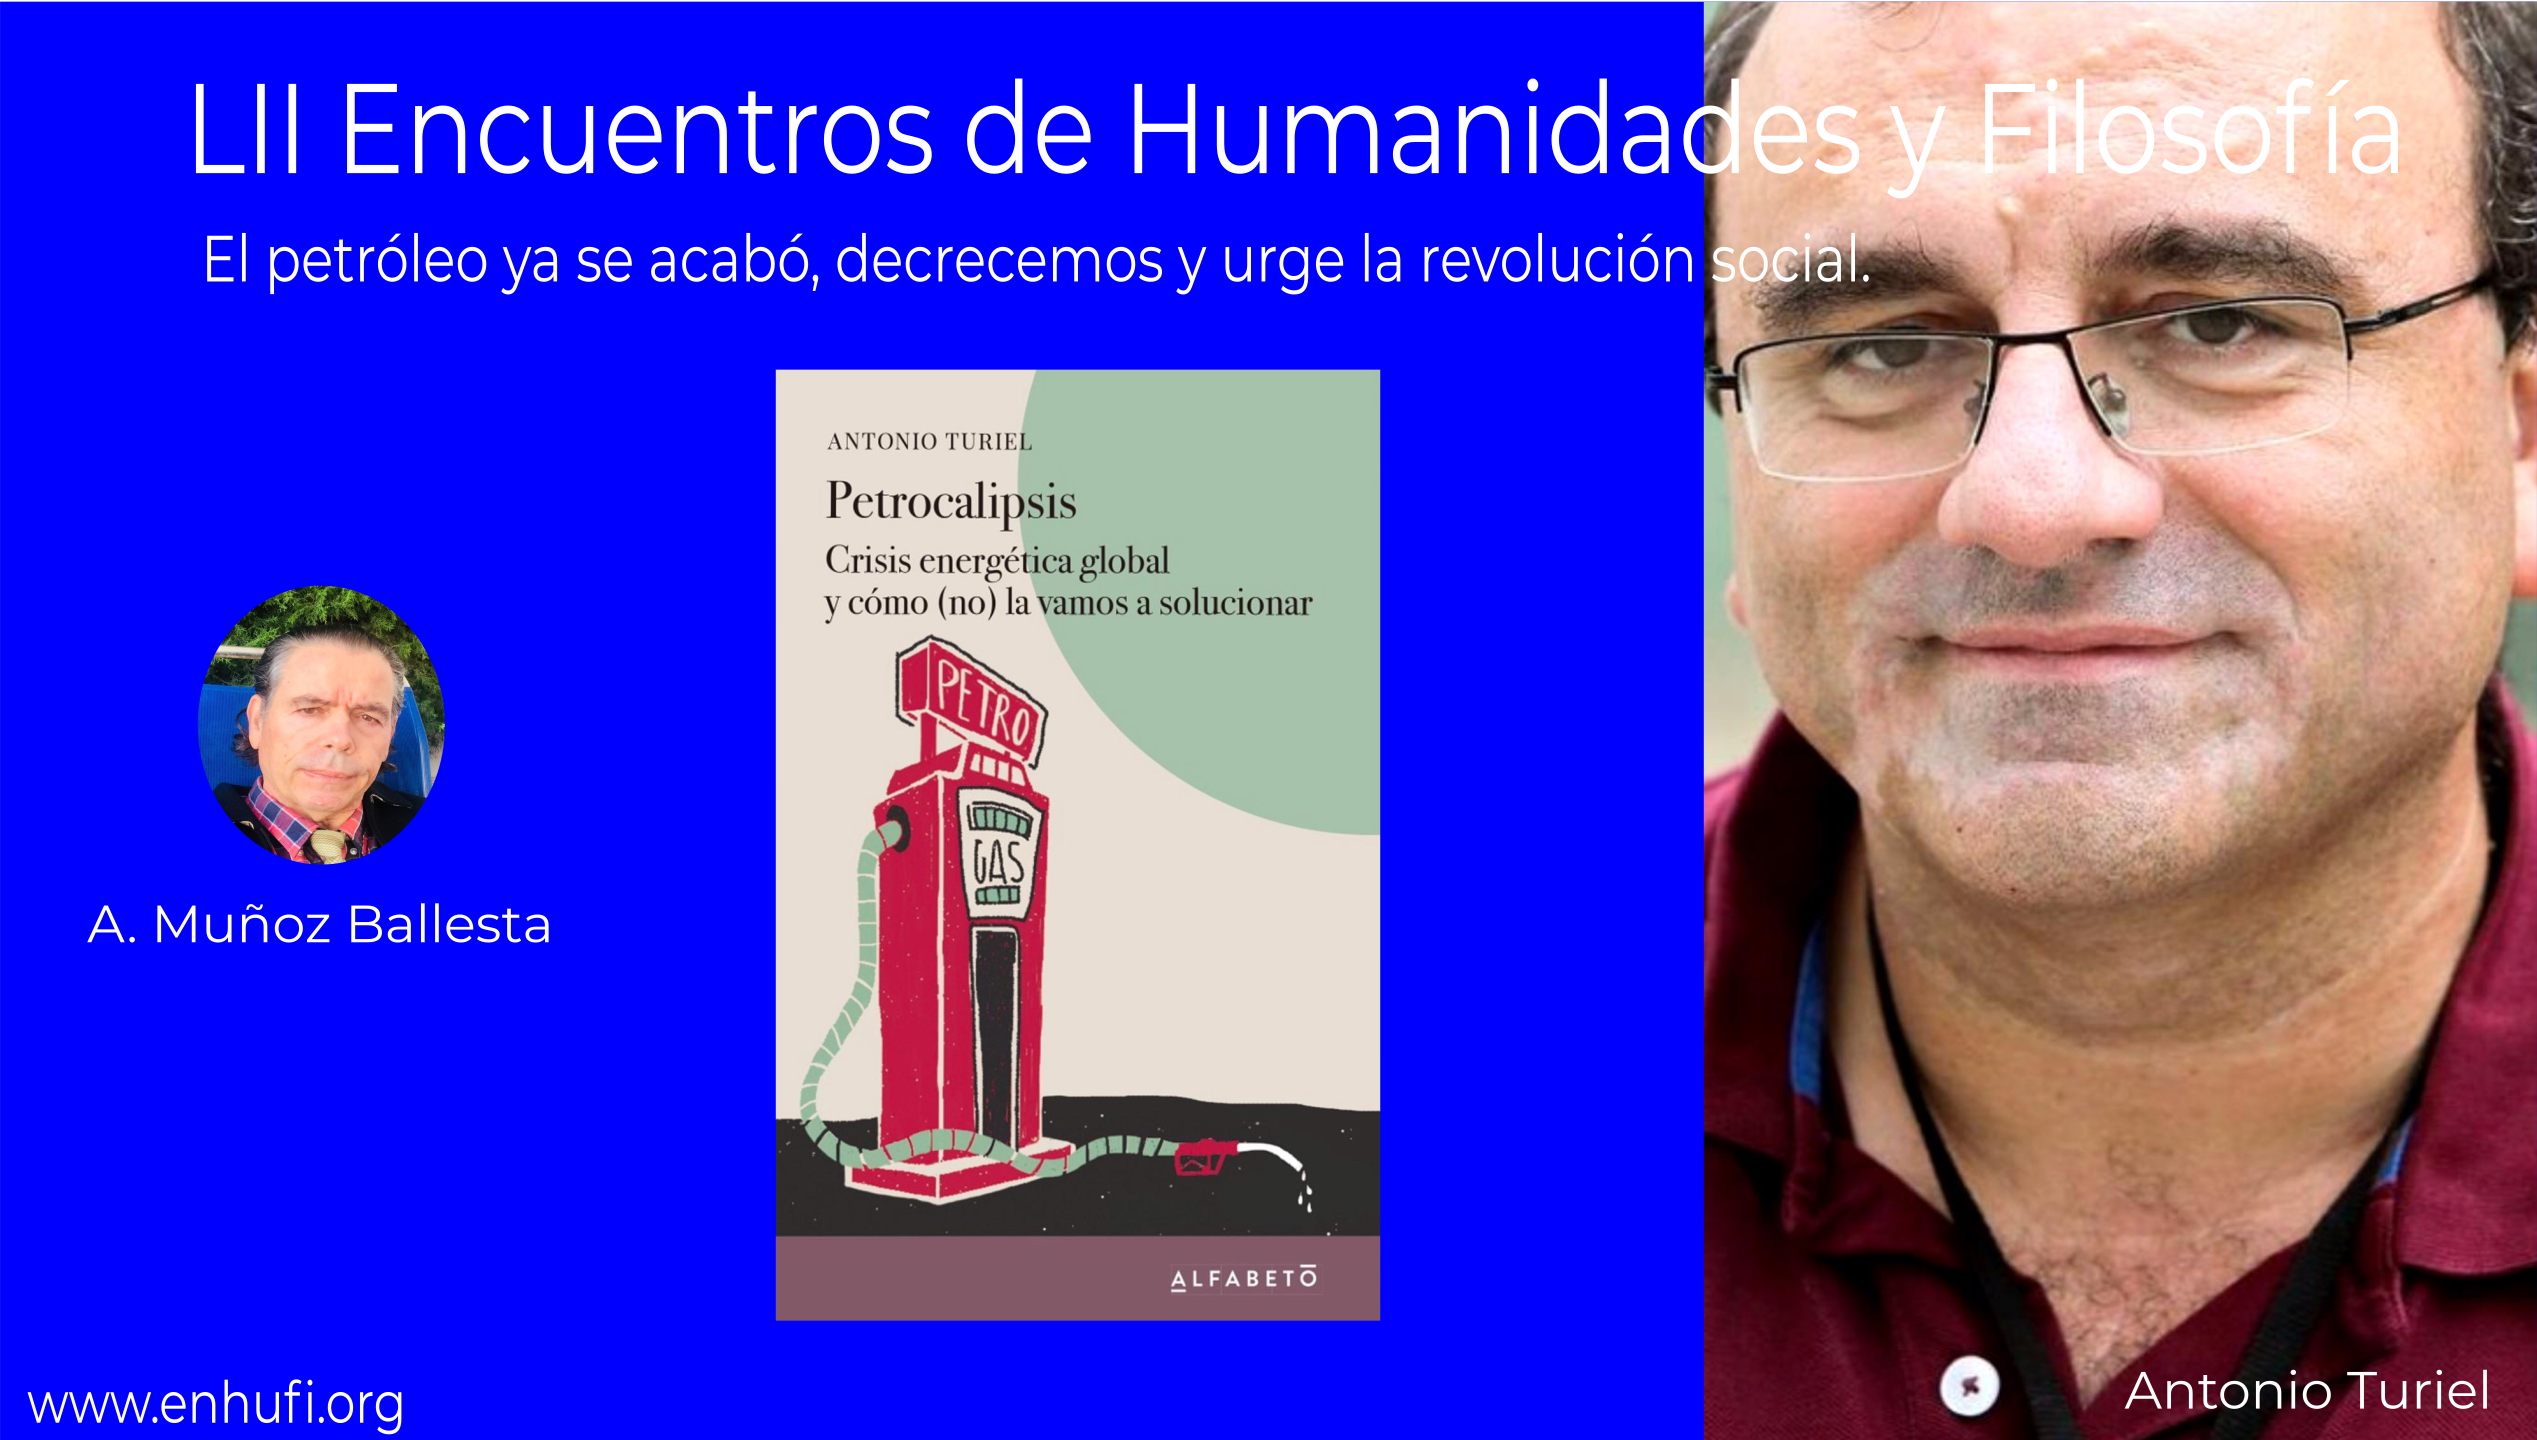 LII Encuentros de Humanidades y Filosfofía,  Antonio Turiel: El petróleo ya se acabó, decrecemos y urge la revolución social.